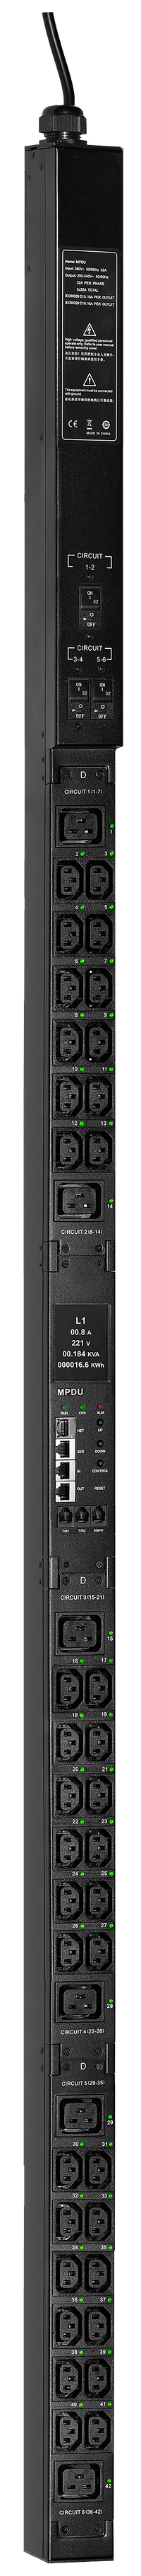 ITK CONTROL PDU с мониторингом и управлением PV1313 3Ф 32А 36С13 6С19 кабель 3м IEC60309